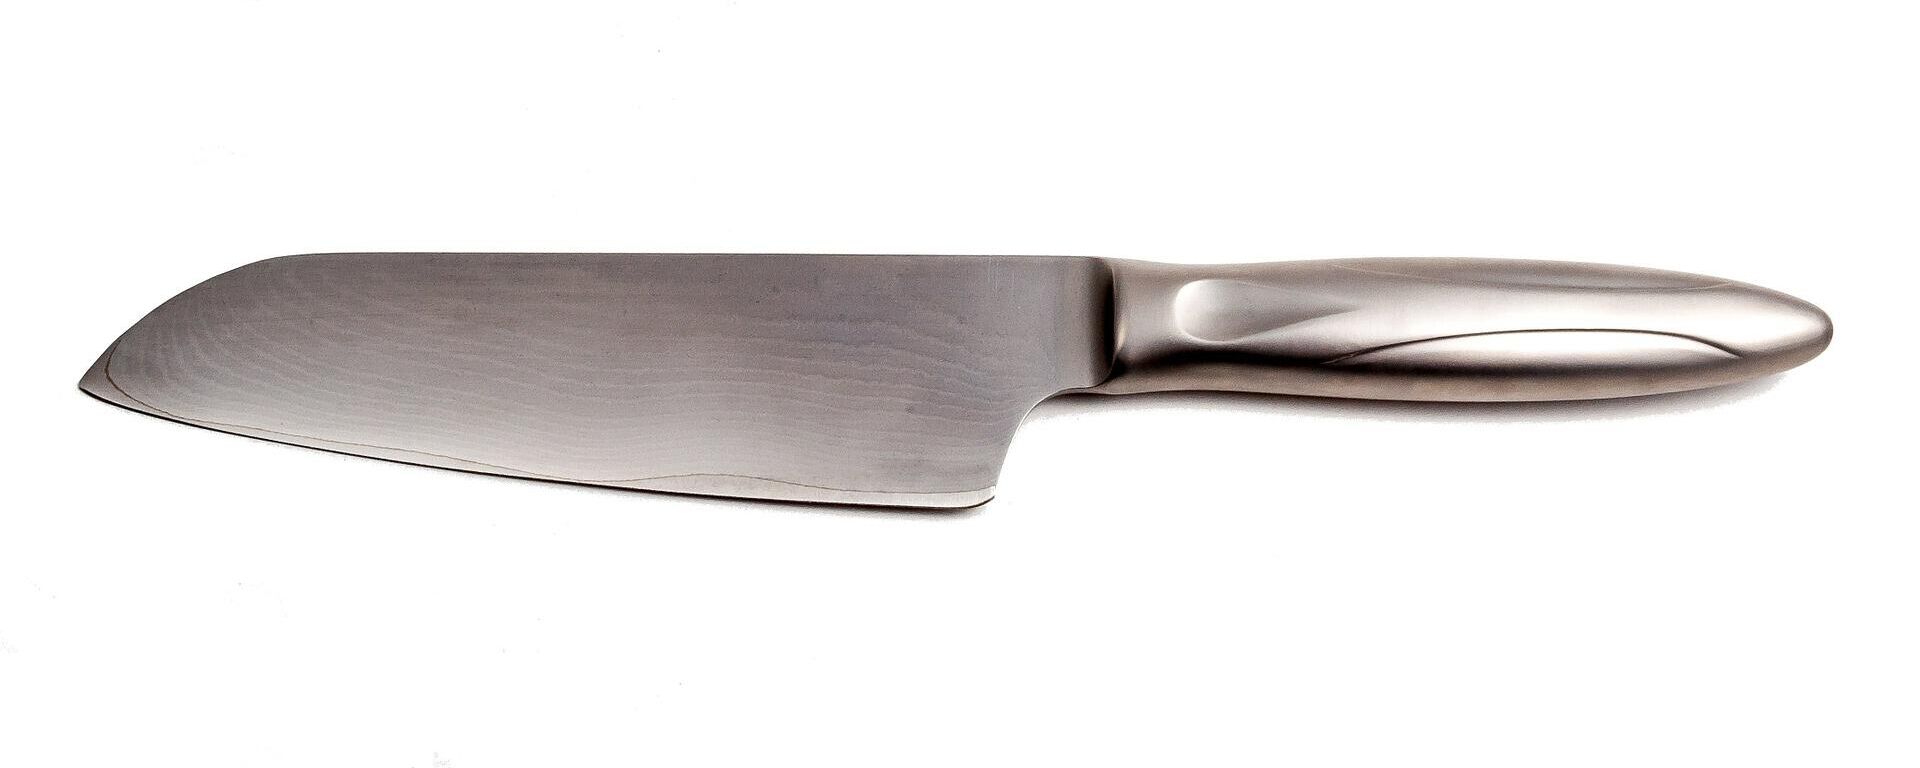 Imagen referencial de un cuchillo de cocina - Sputnik Mundo, 1920, 02.03.2021